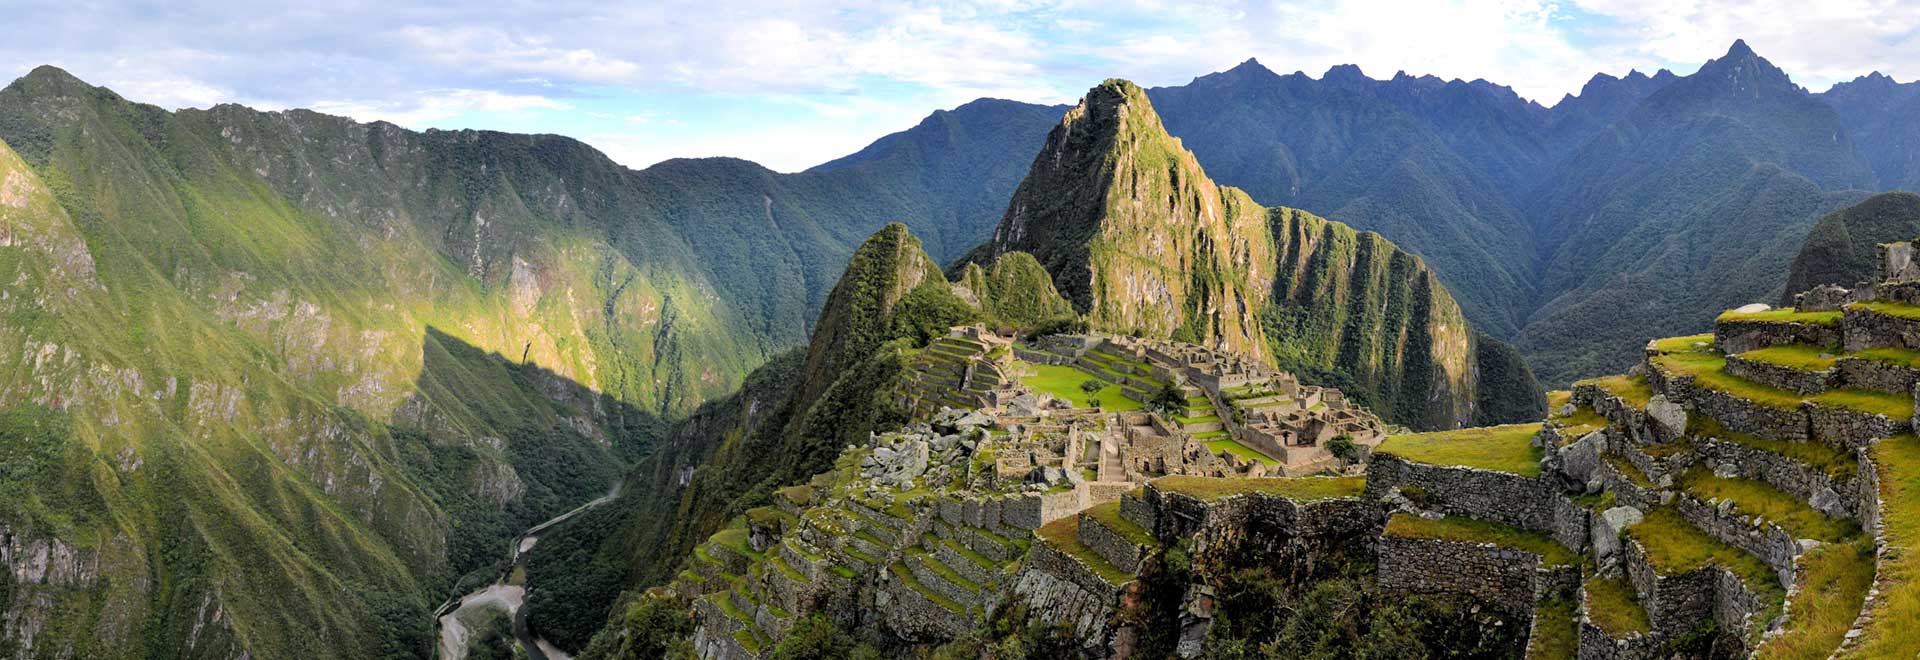 Latin America Peru Machu Picchu Sacred Valley MH